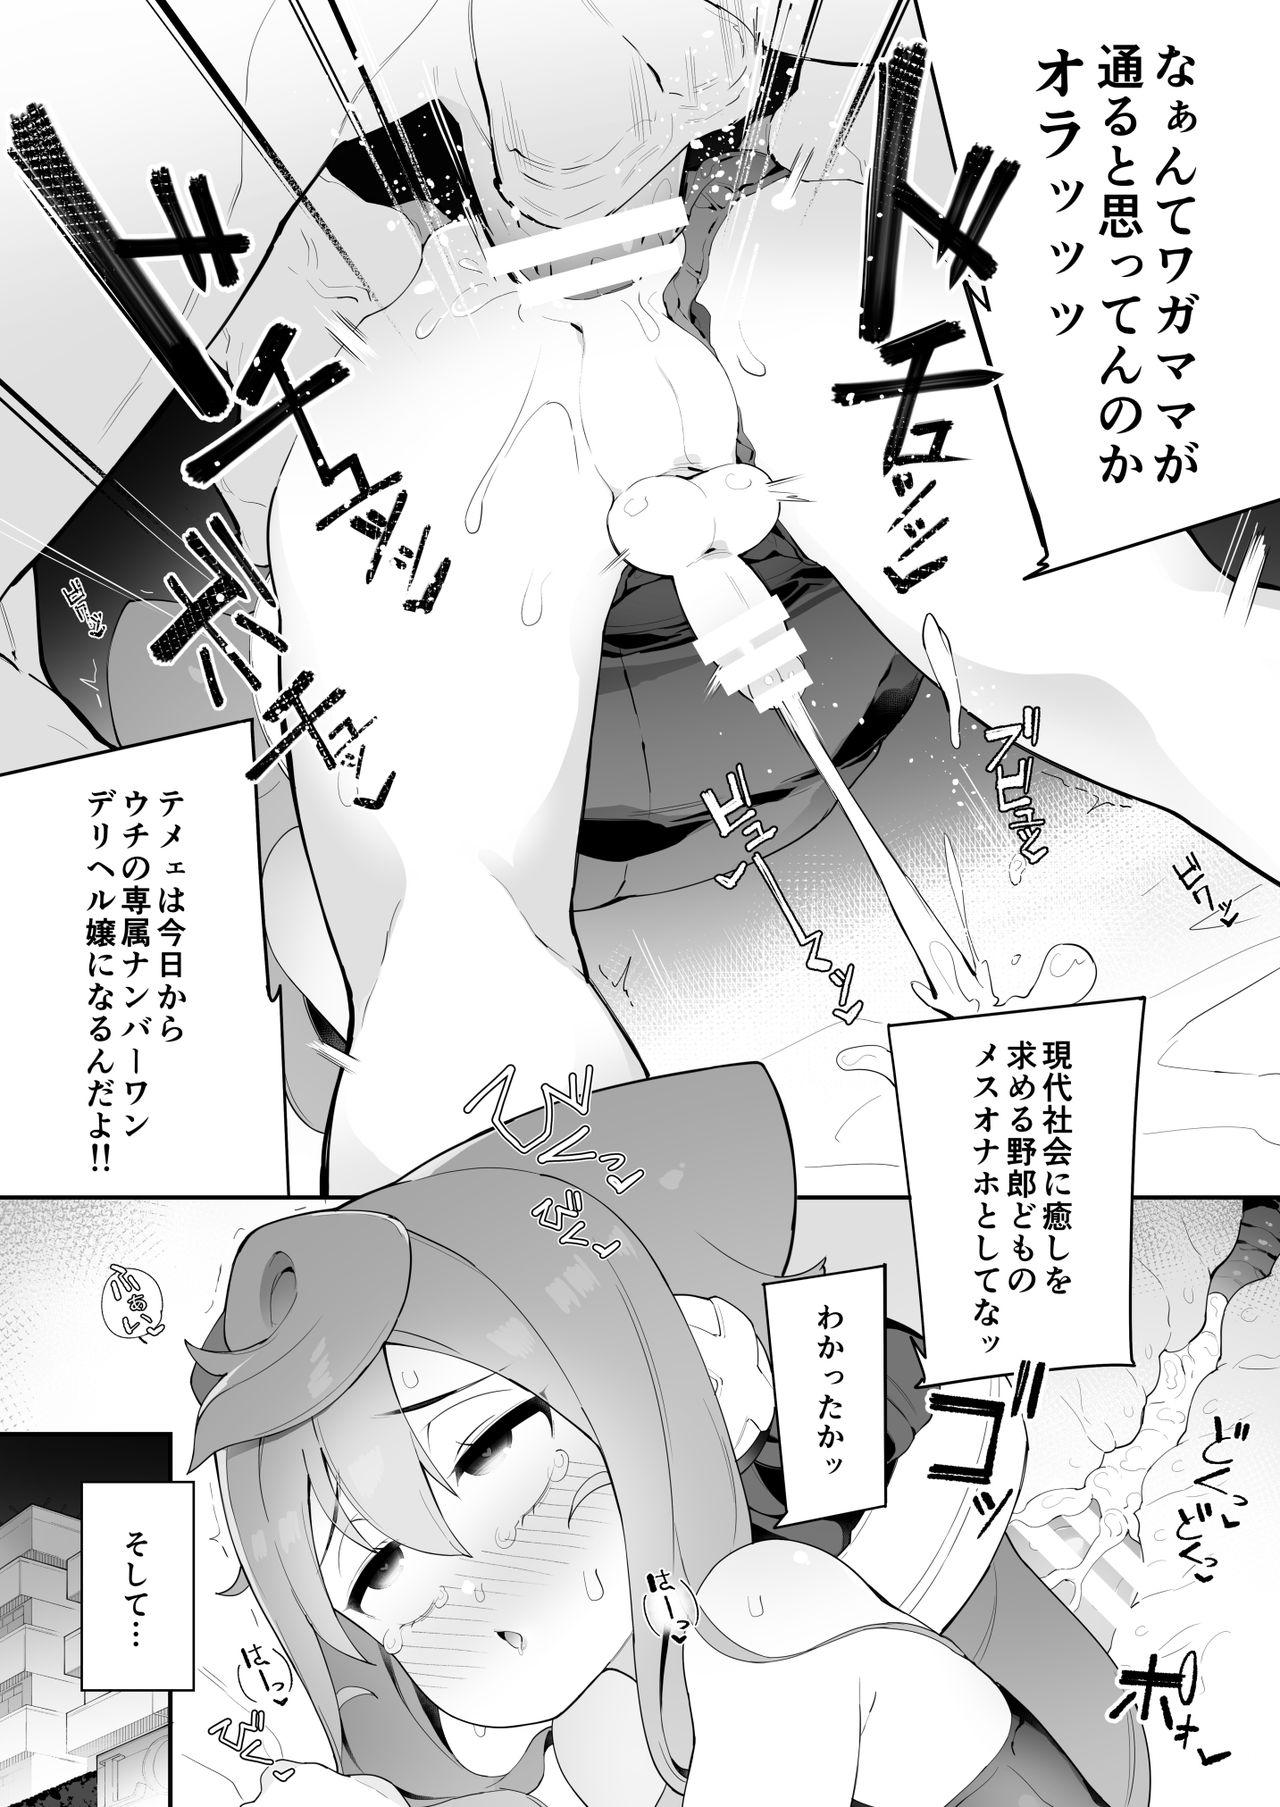 Boyfriend [Kuropoplar (Nyakkuru)] HakaDol! 3-gou-kun no Mesuochi Tokunou DeliHeal Service (Hacka Doll) [Digital] - Hacka doll Ghetto - Page 5